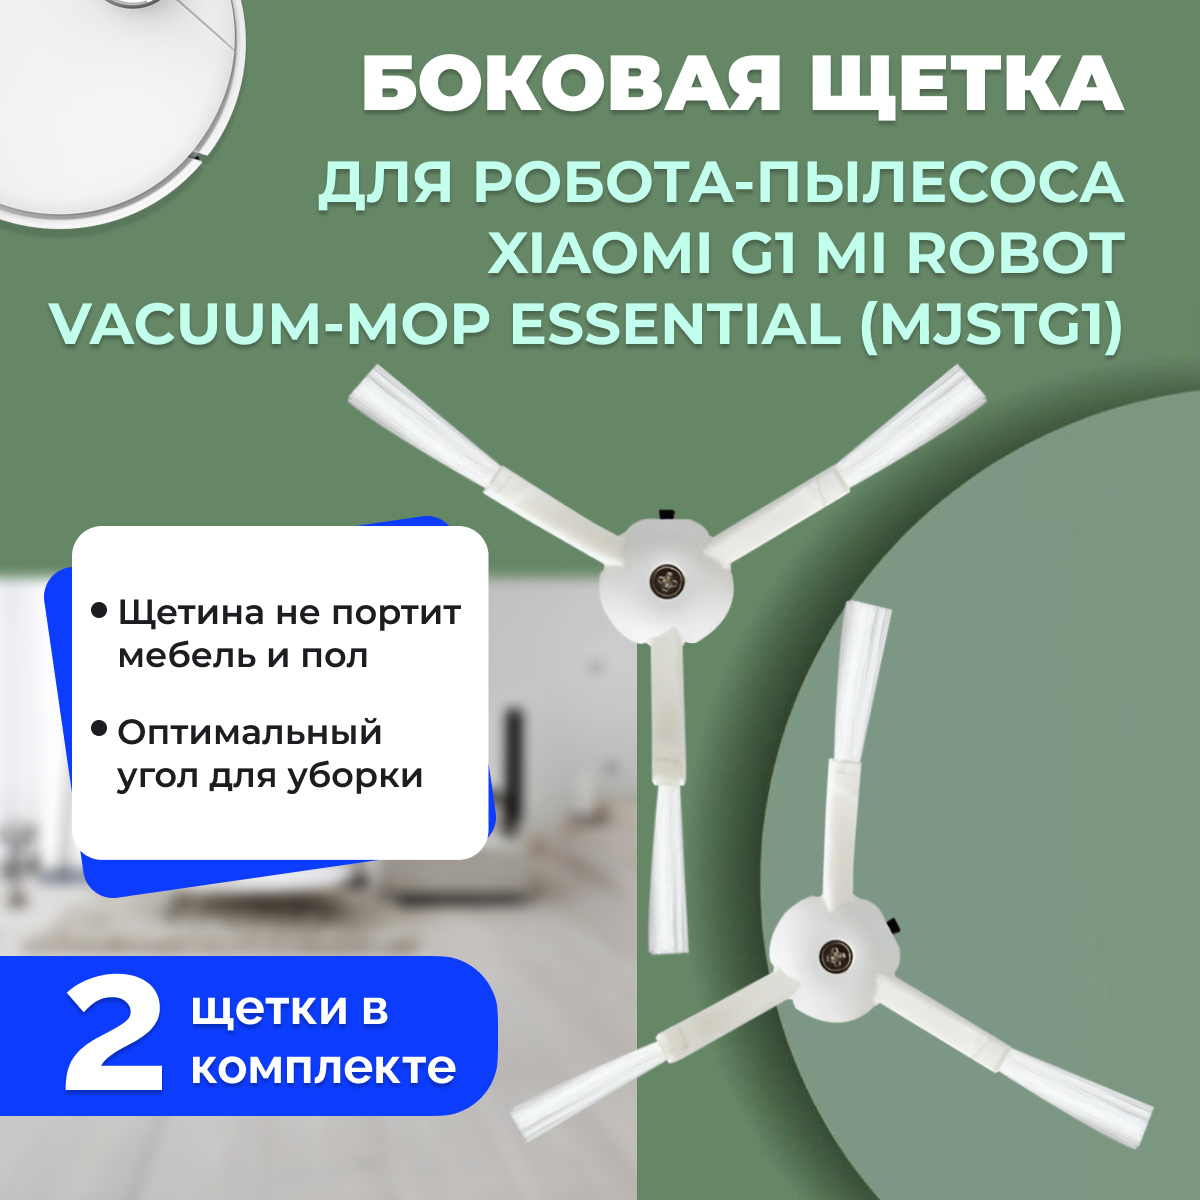 Боковые щетки для робота-пылесоса Xiaomi G1 Mi Robot Vacuum-Mop Essential (MJSTG1), 2 штуки 558242